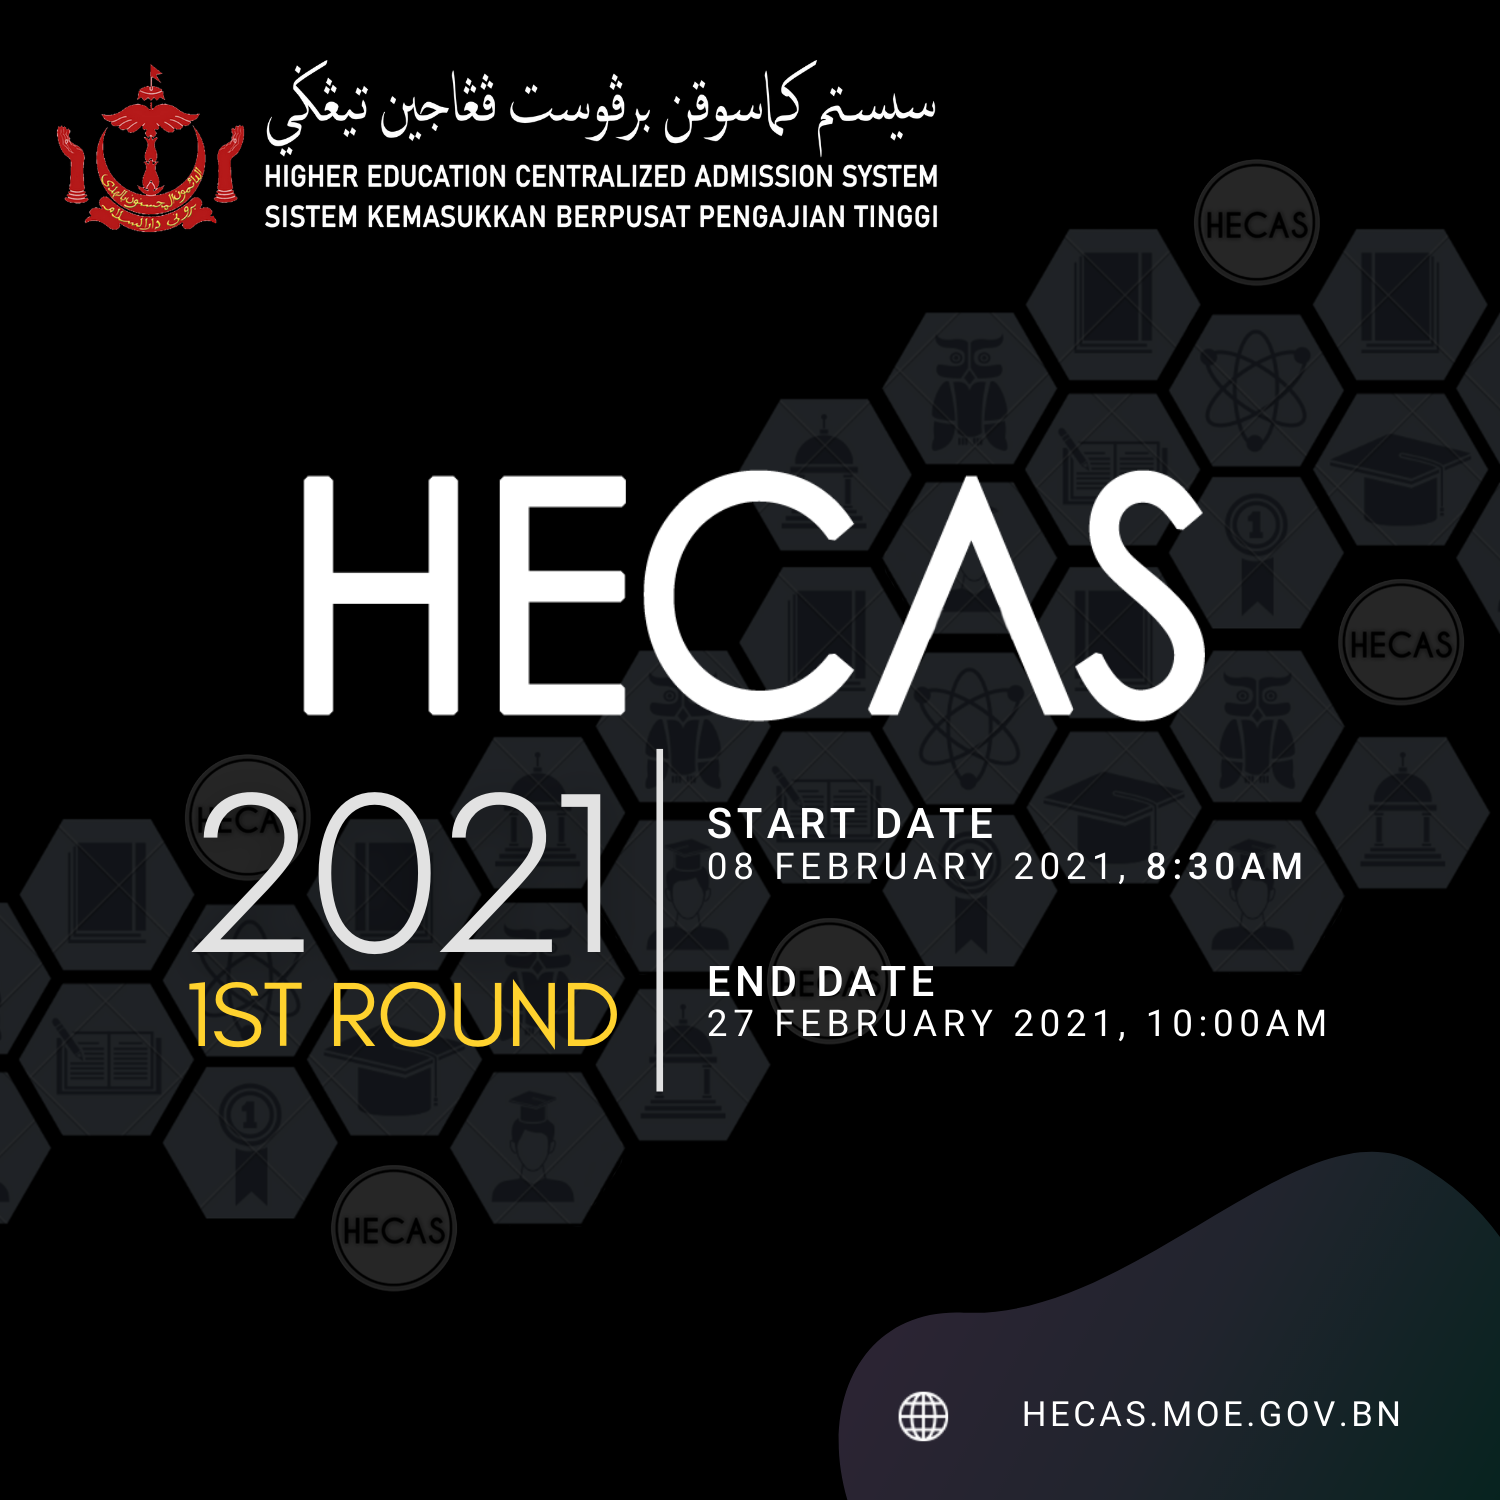 HECAS 2021 - Instagram 04022021.png